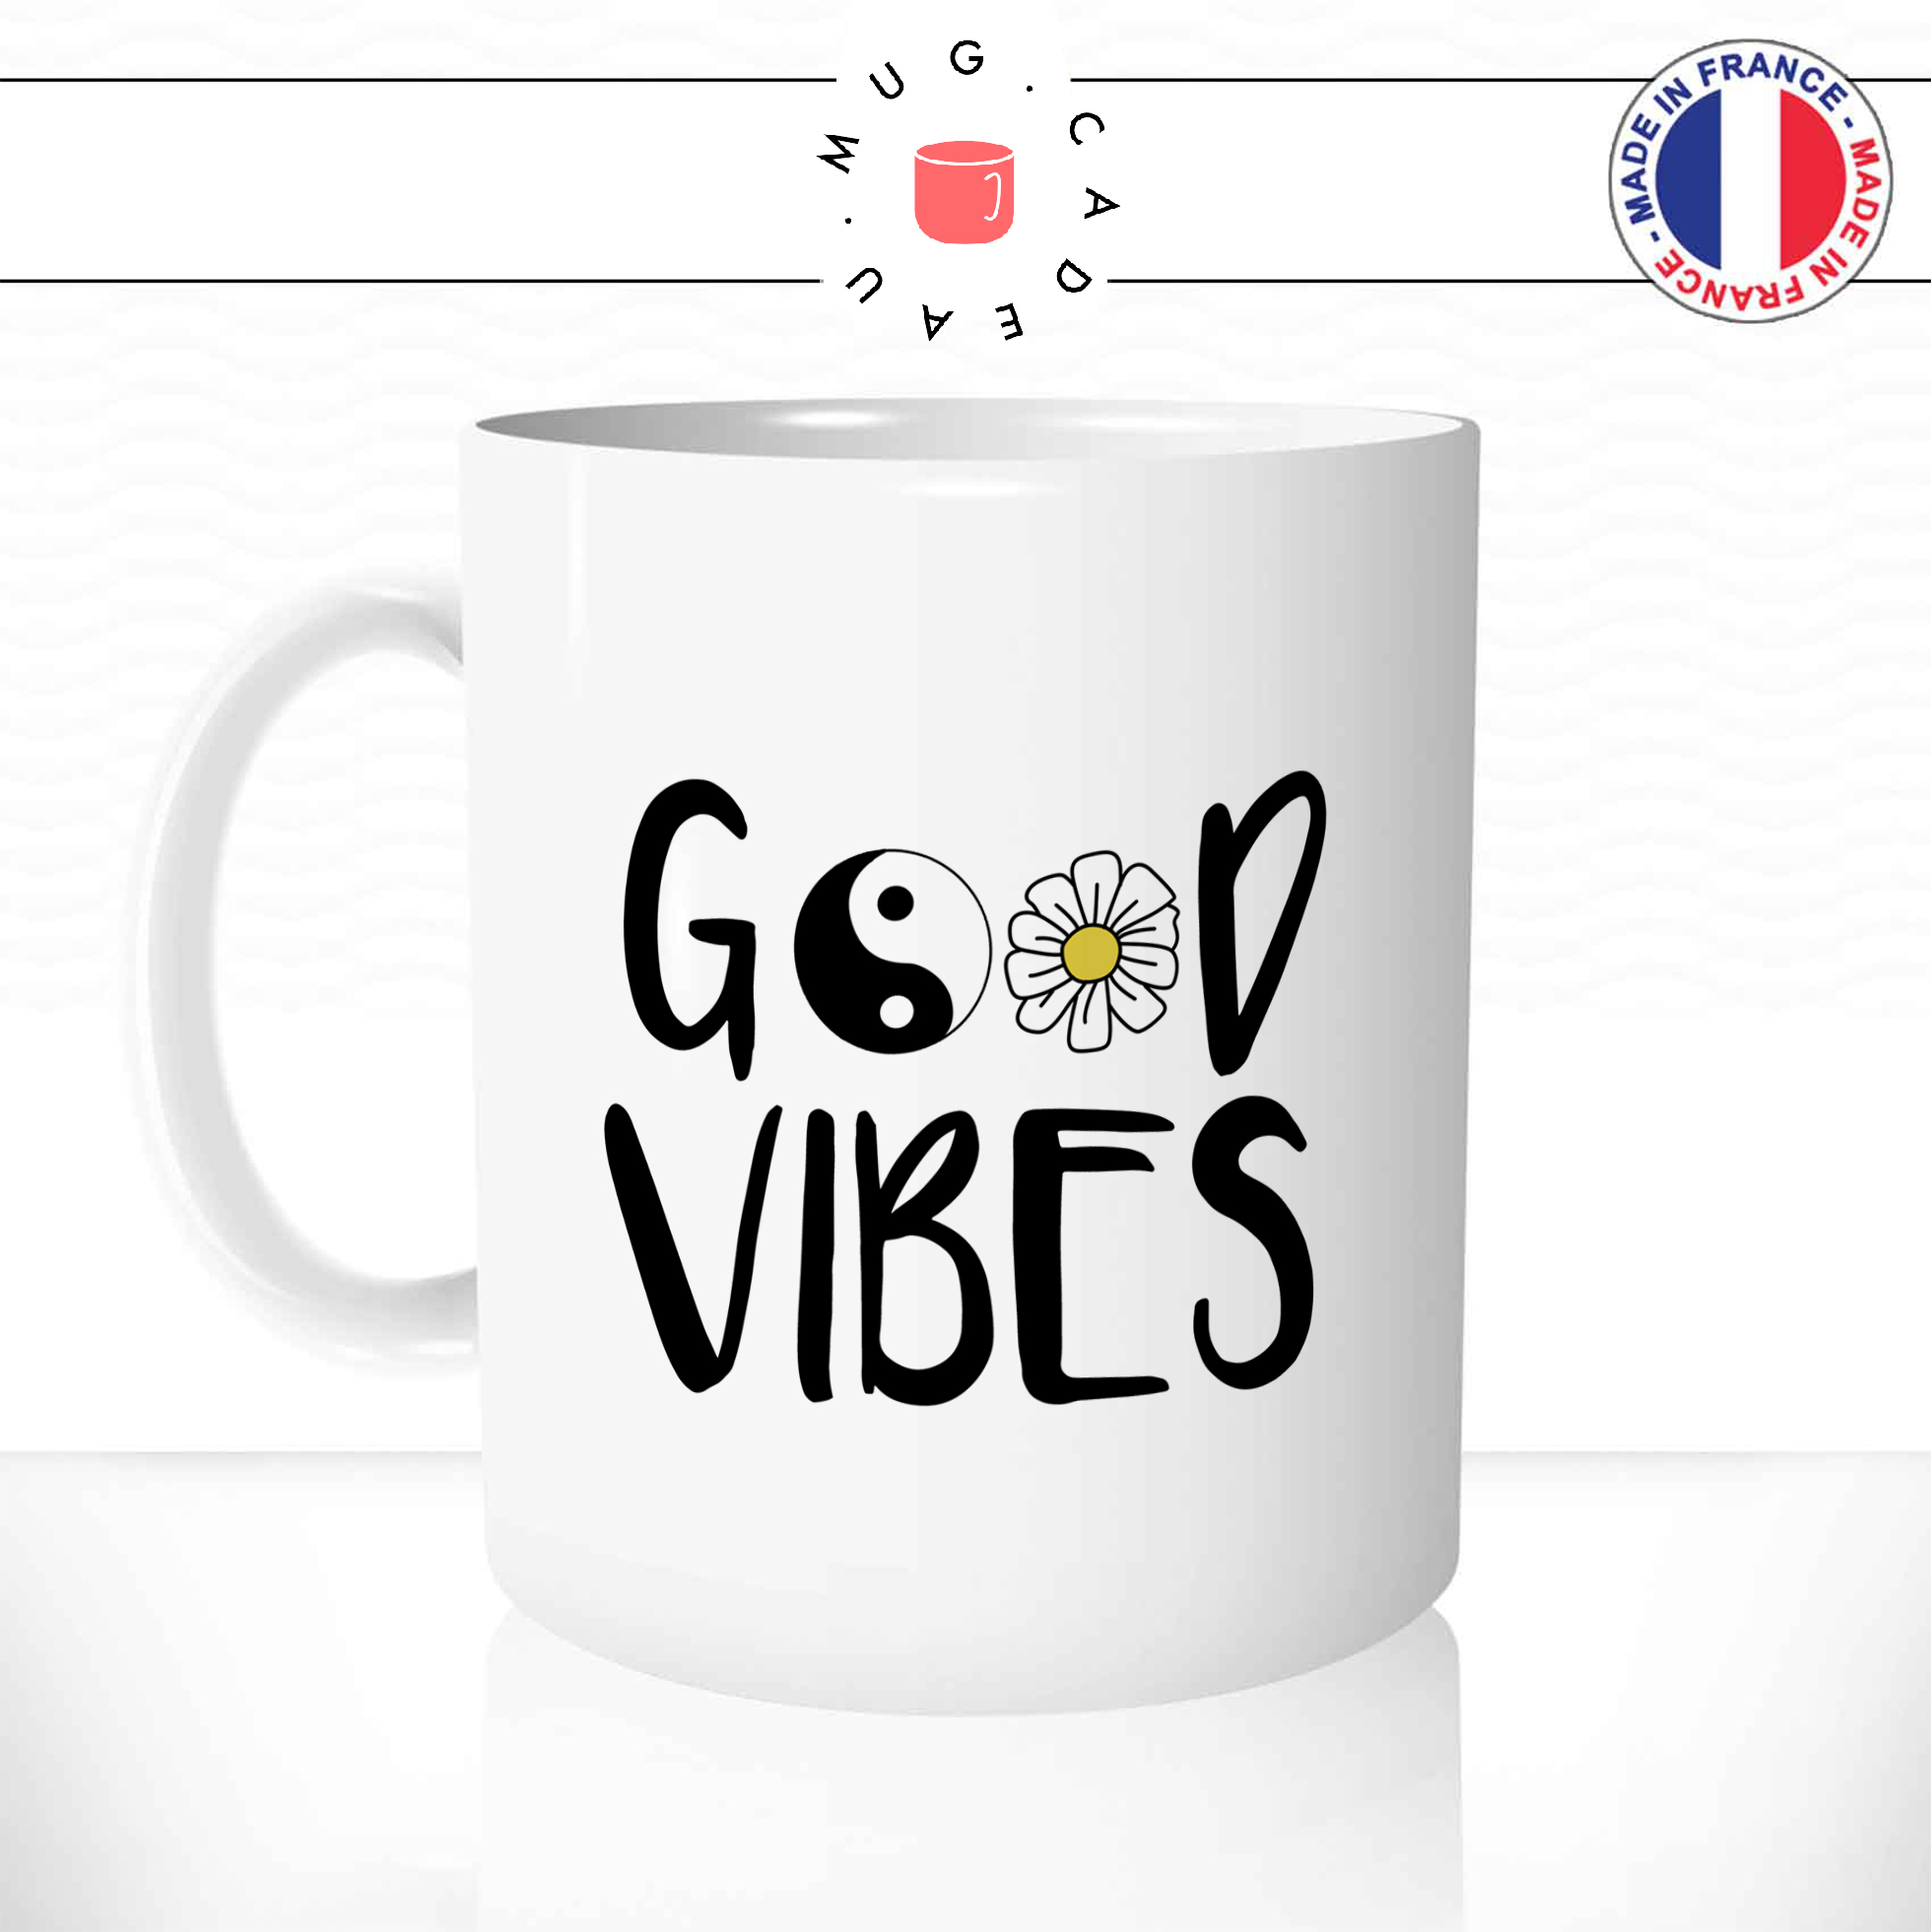 Mug Good Vibes